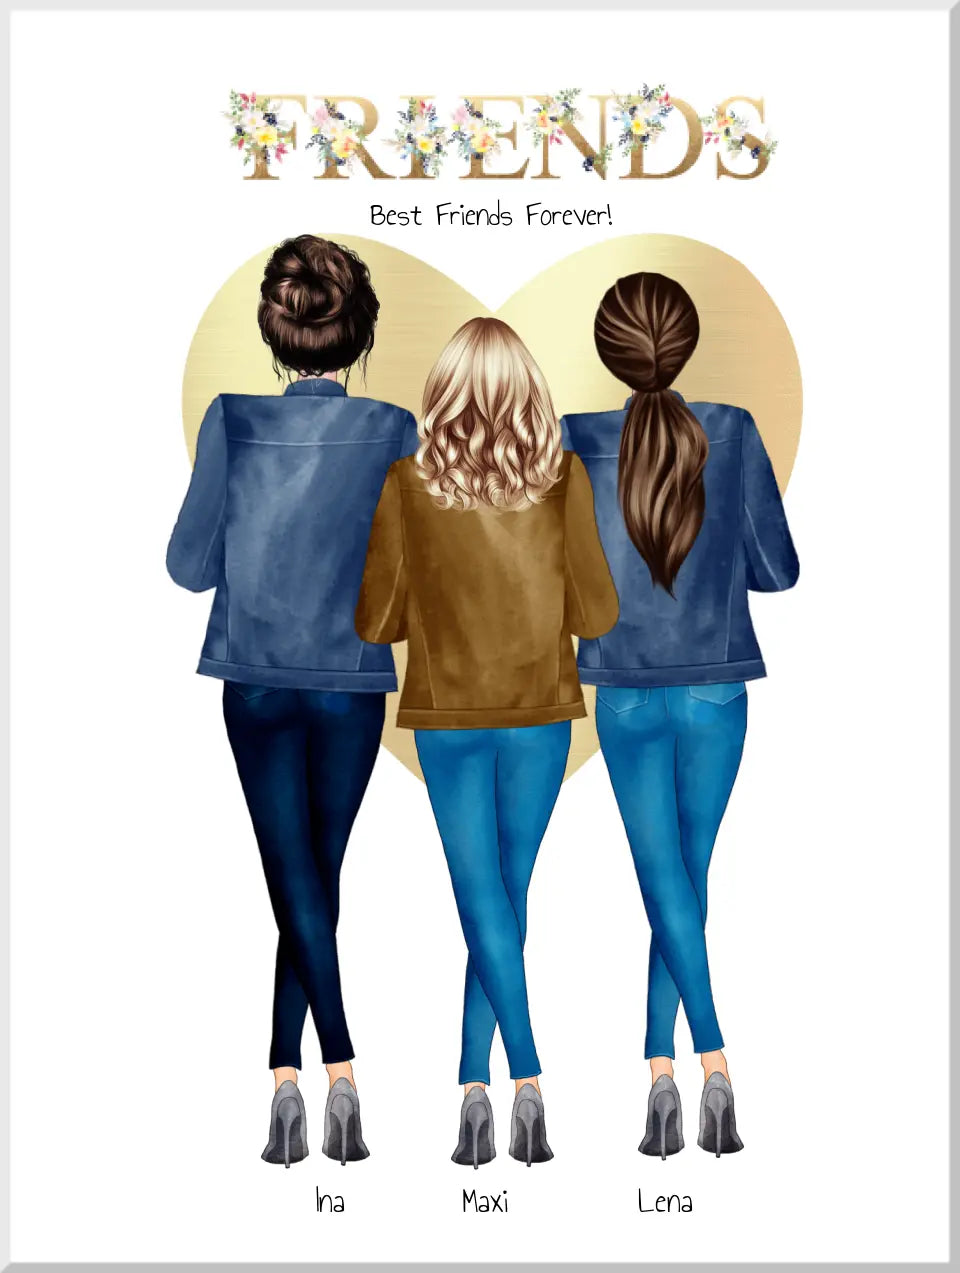 Personalisiertes Geschenk 3 Beste Freunde forever Poster - 3 Freundin Bild personalisiert